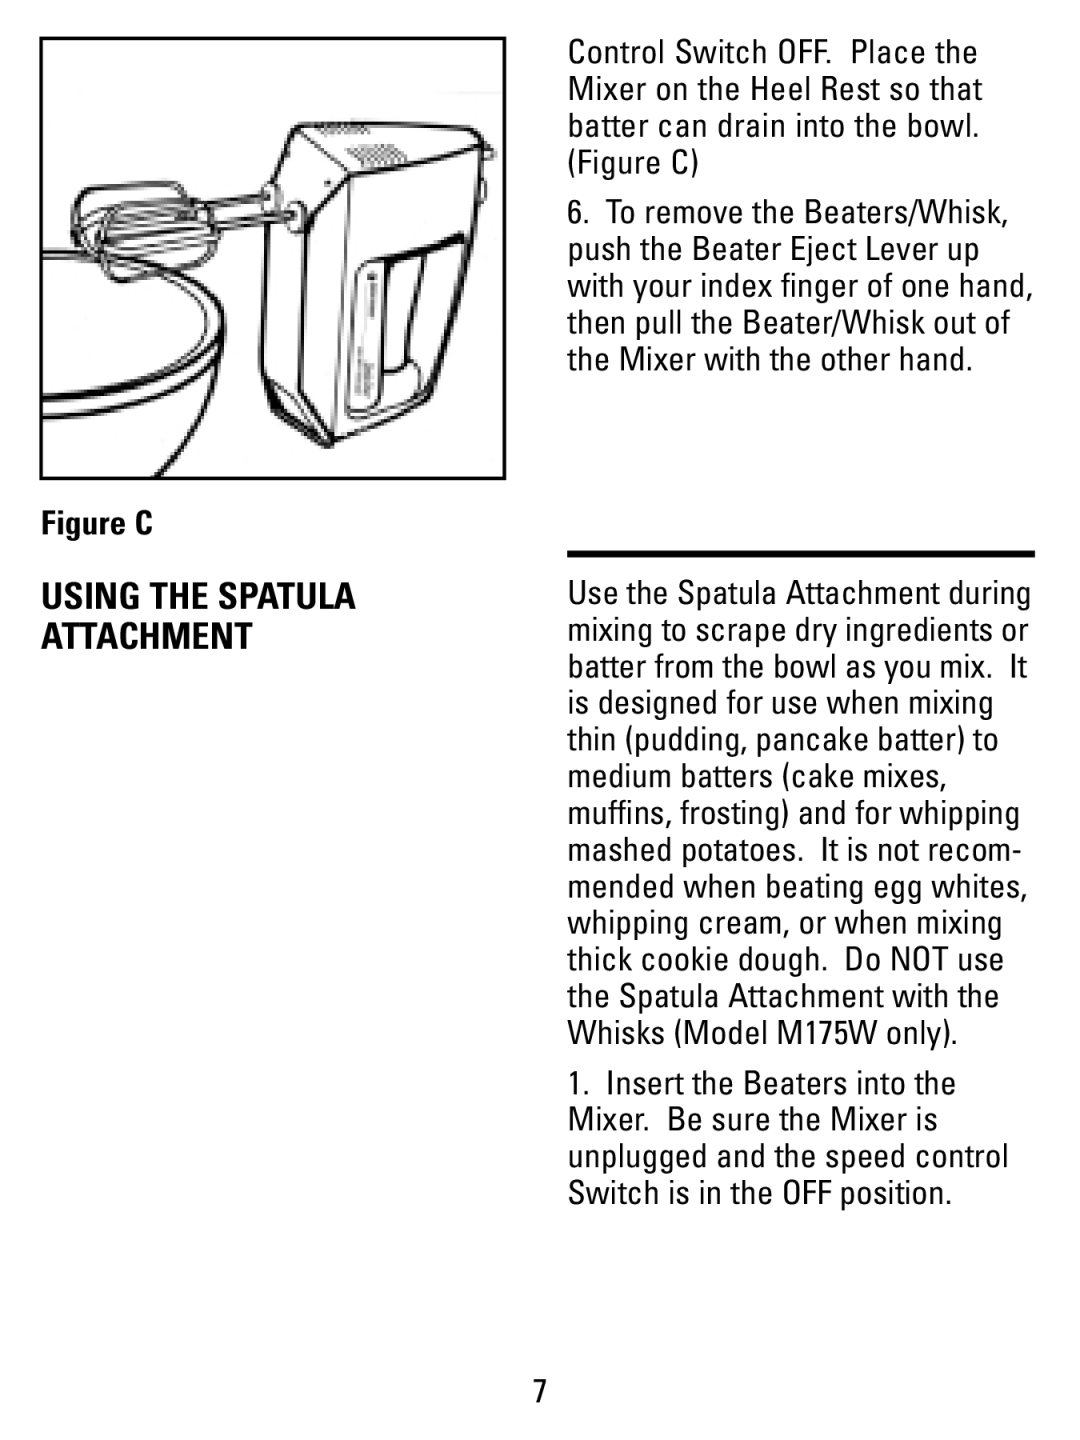 Black & Decker M175W manual Figure C, Using The Spatula Attachment 